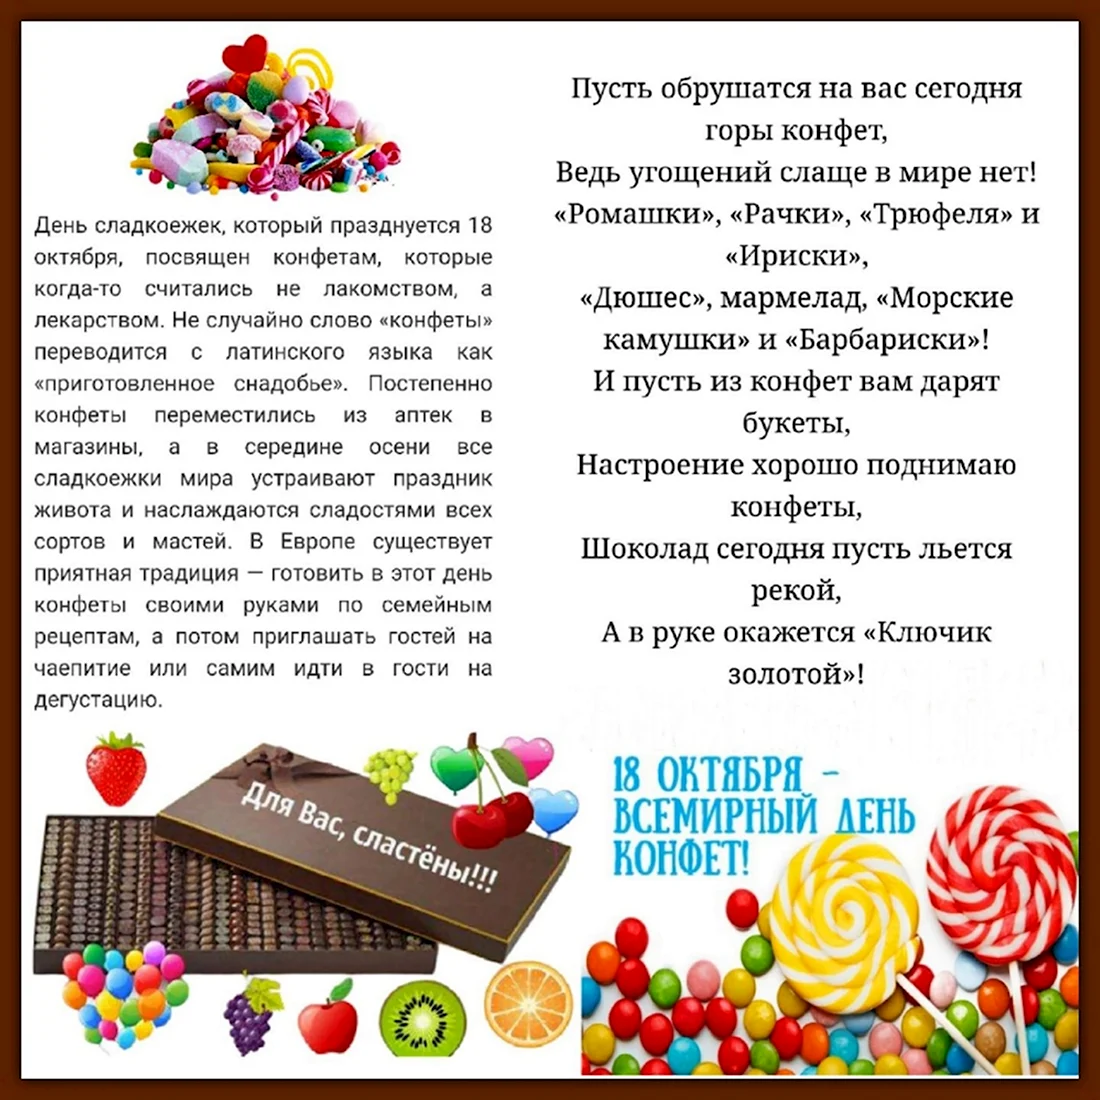 Всемирный день конфет. Поздравление на праздник